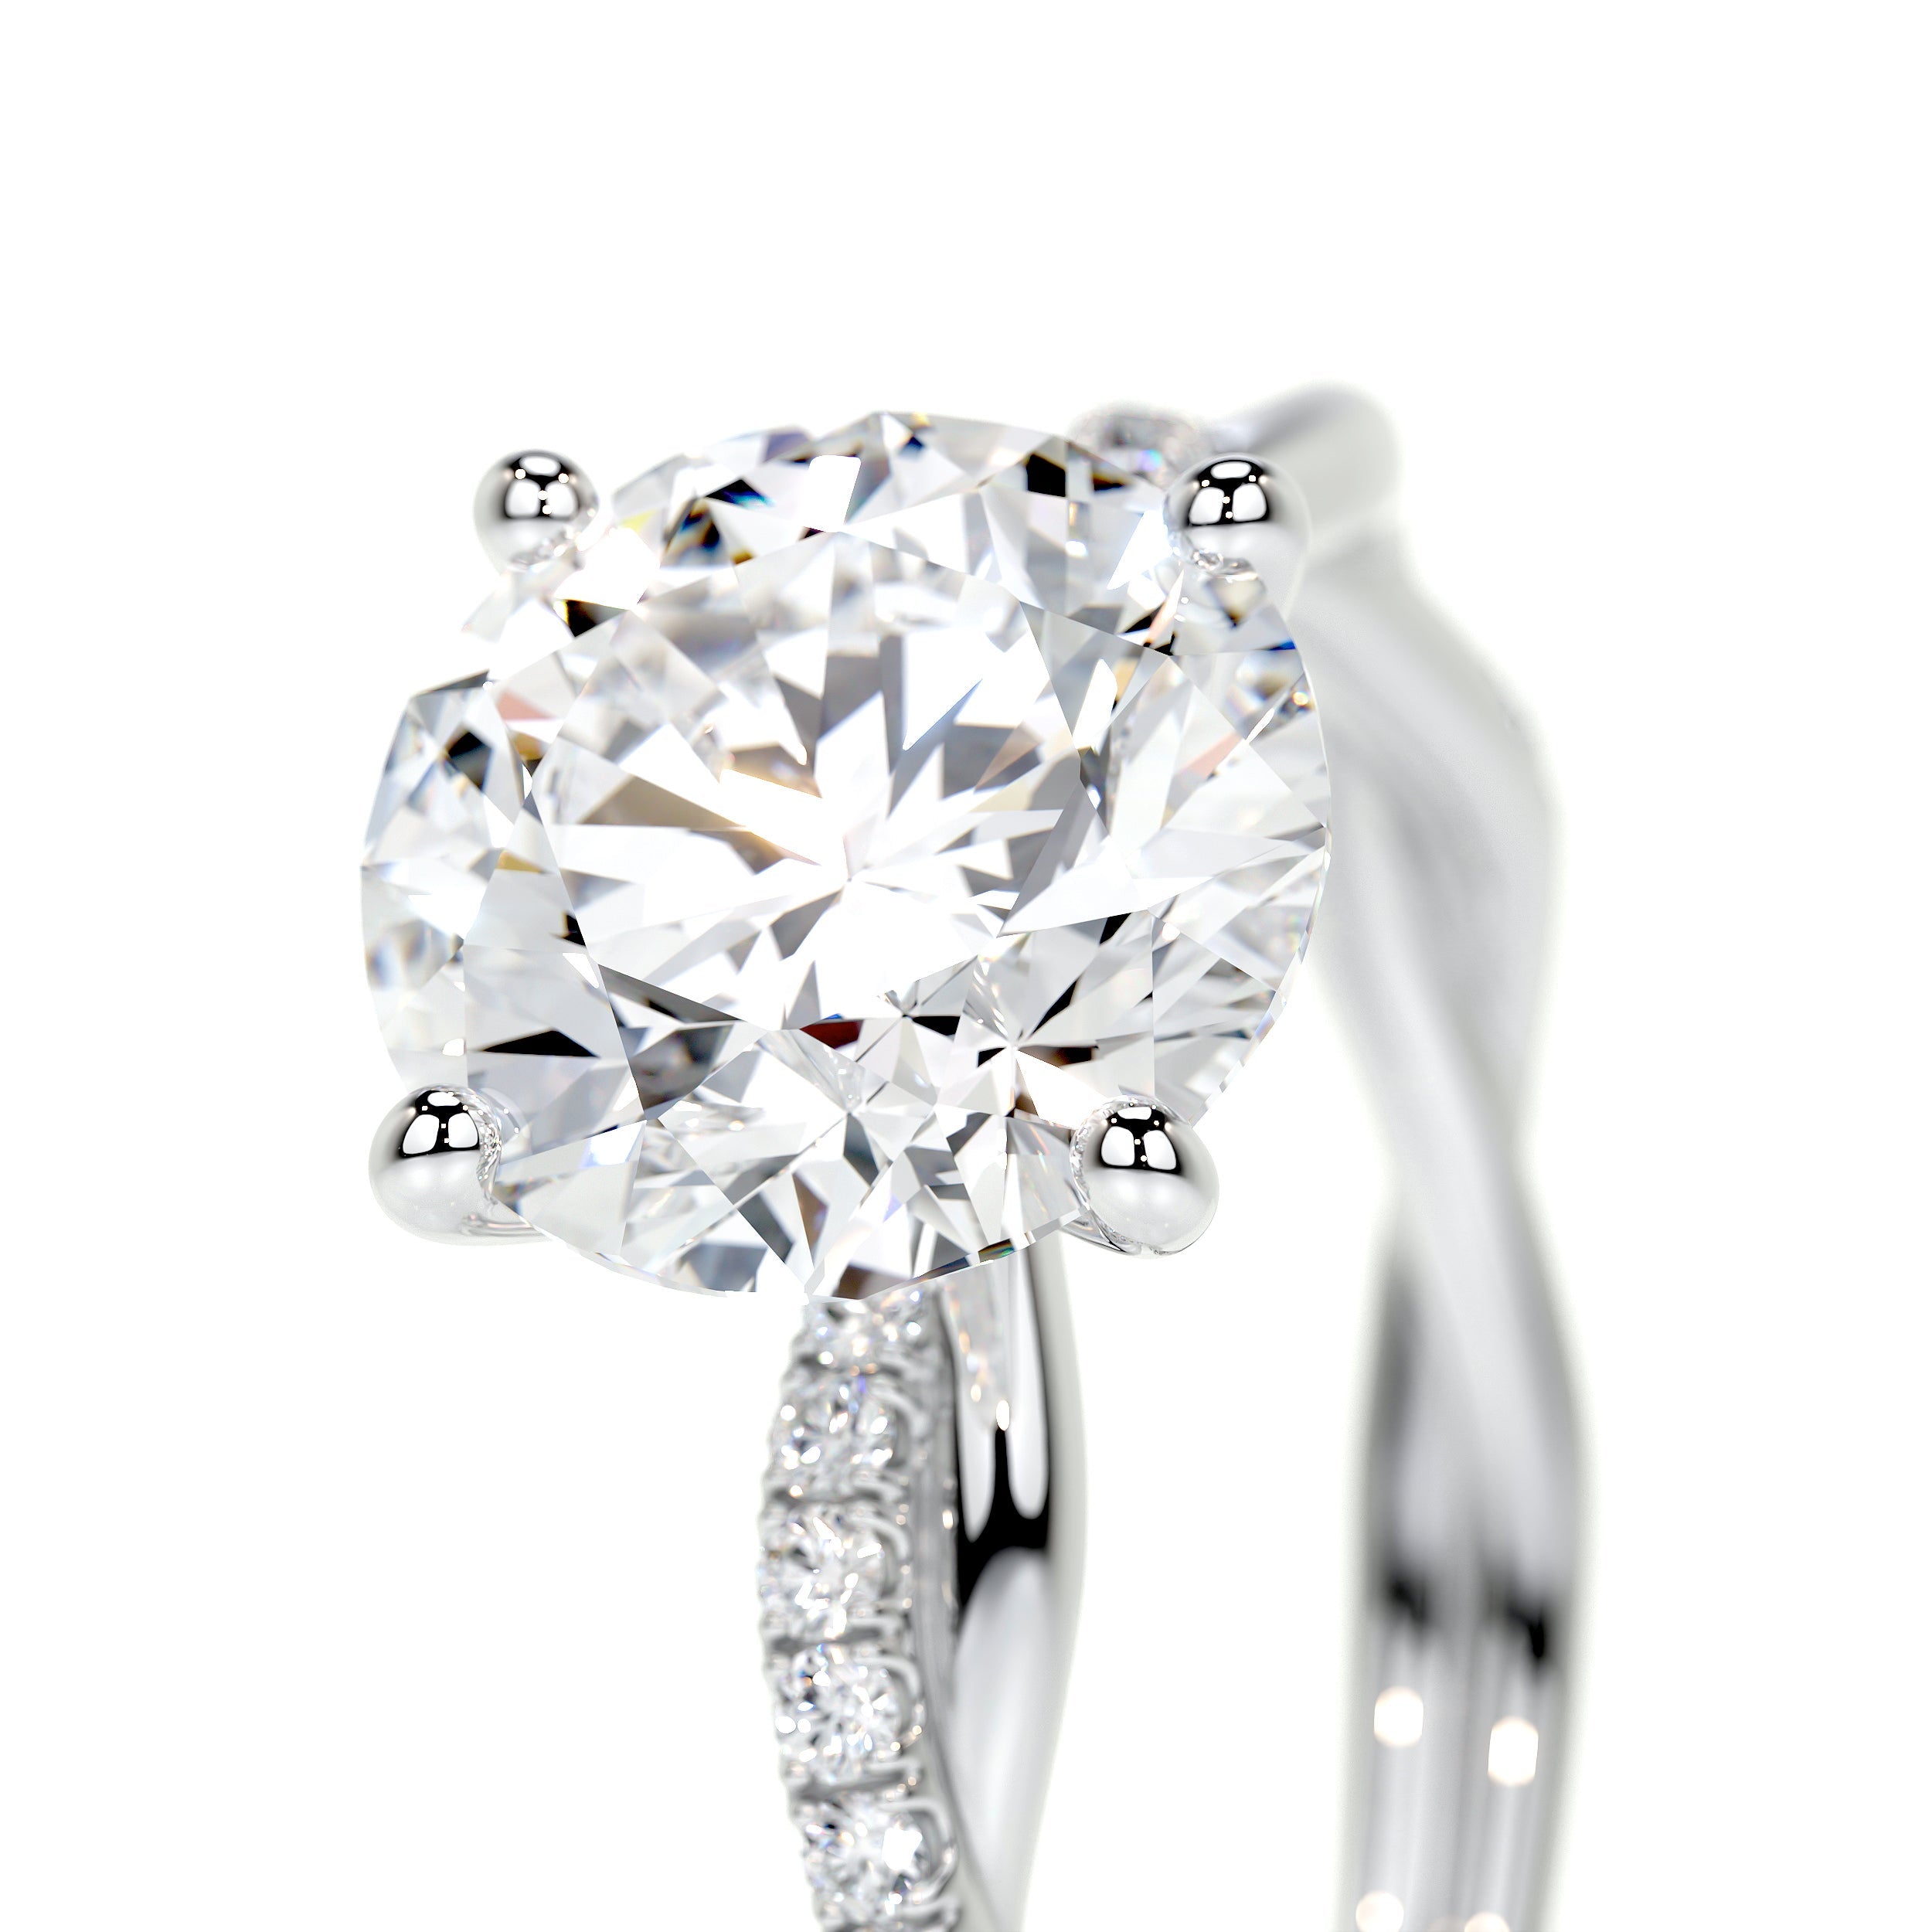 Crystal Lab Grown Diamond Ring   (1.8 Carat) -14K White Gold